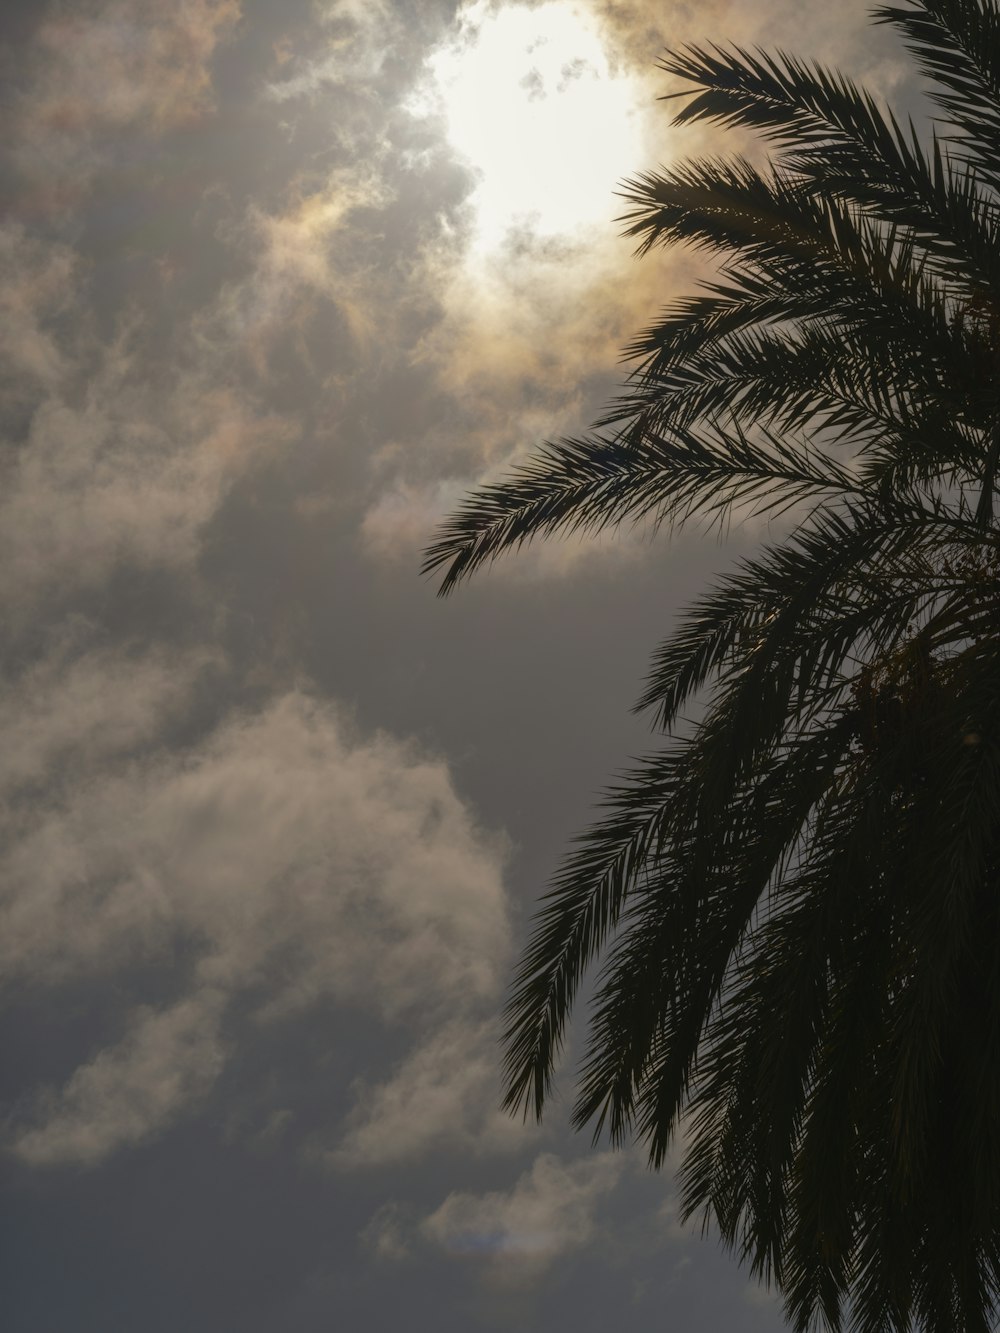 El sol brilla a través de las nubes detrás de una palmera